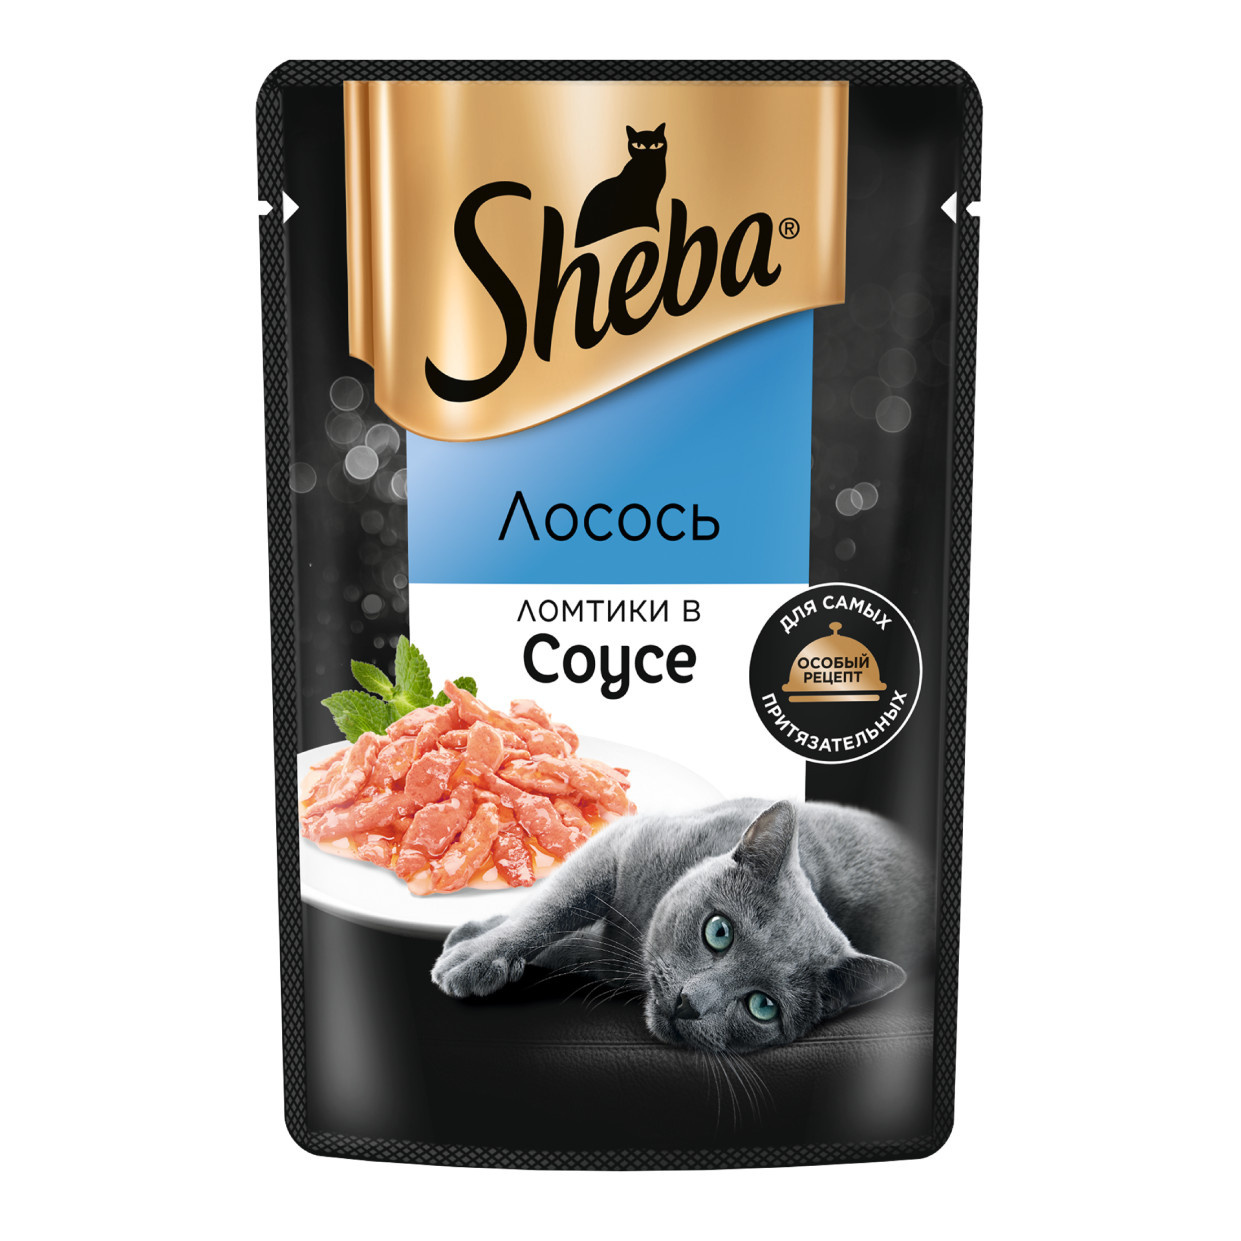 Sheba влажный корм для кошек «Ломтики в соусе с лососем» (75 г)